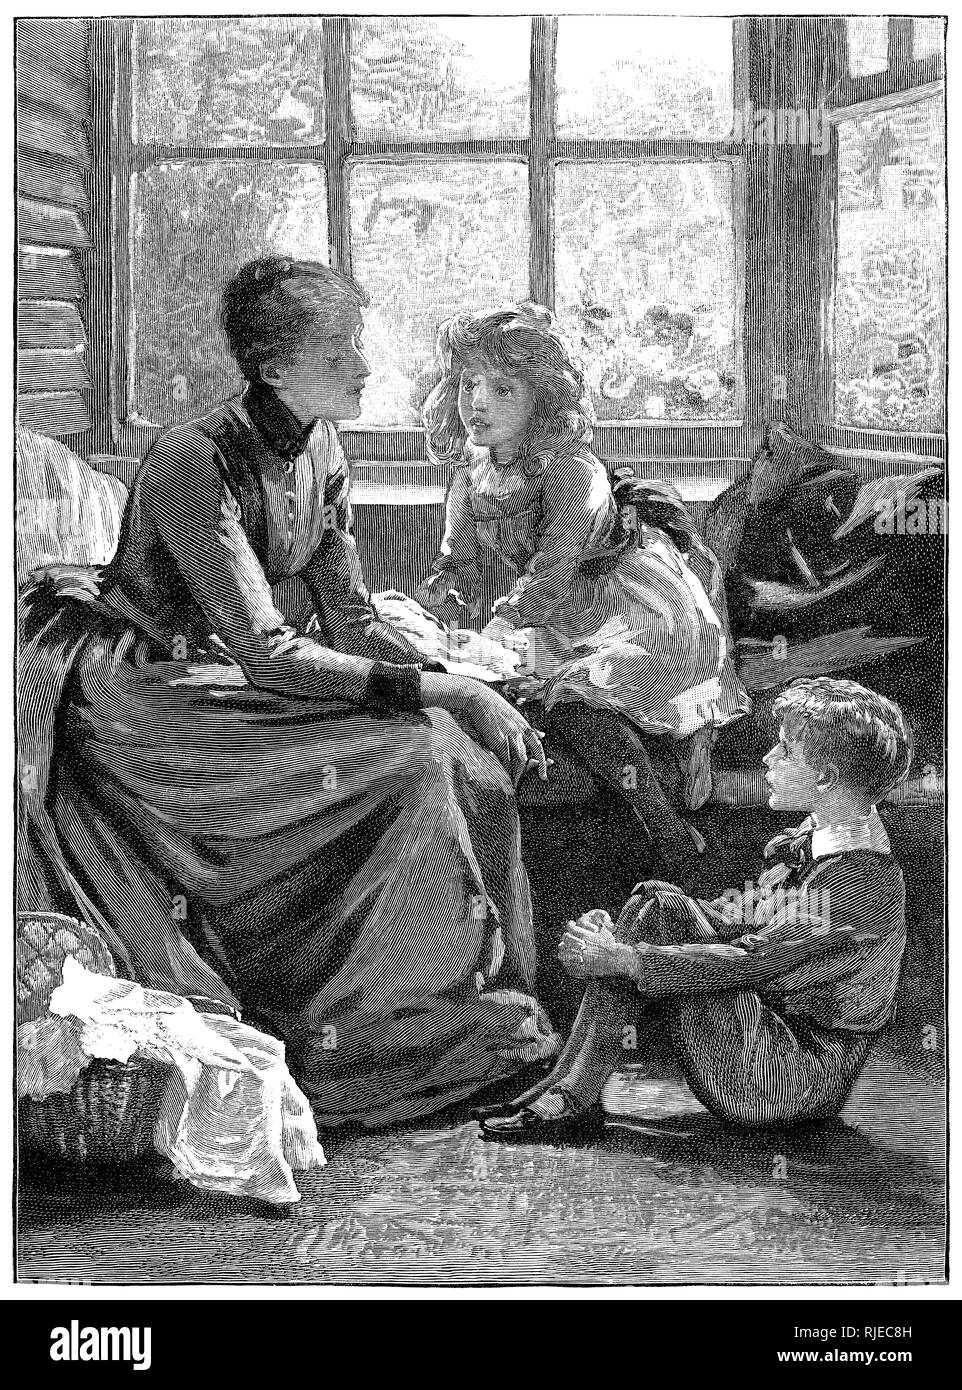 Illustration par Margaret Isabel Dicksee (1858-1903) d'une jeune mère victorien raconter des histoires à son fils et sa fille, publié dans le Rapport annuel 1892 de vacances Wasdow. Banque D'Images